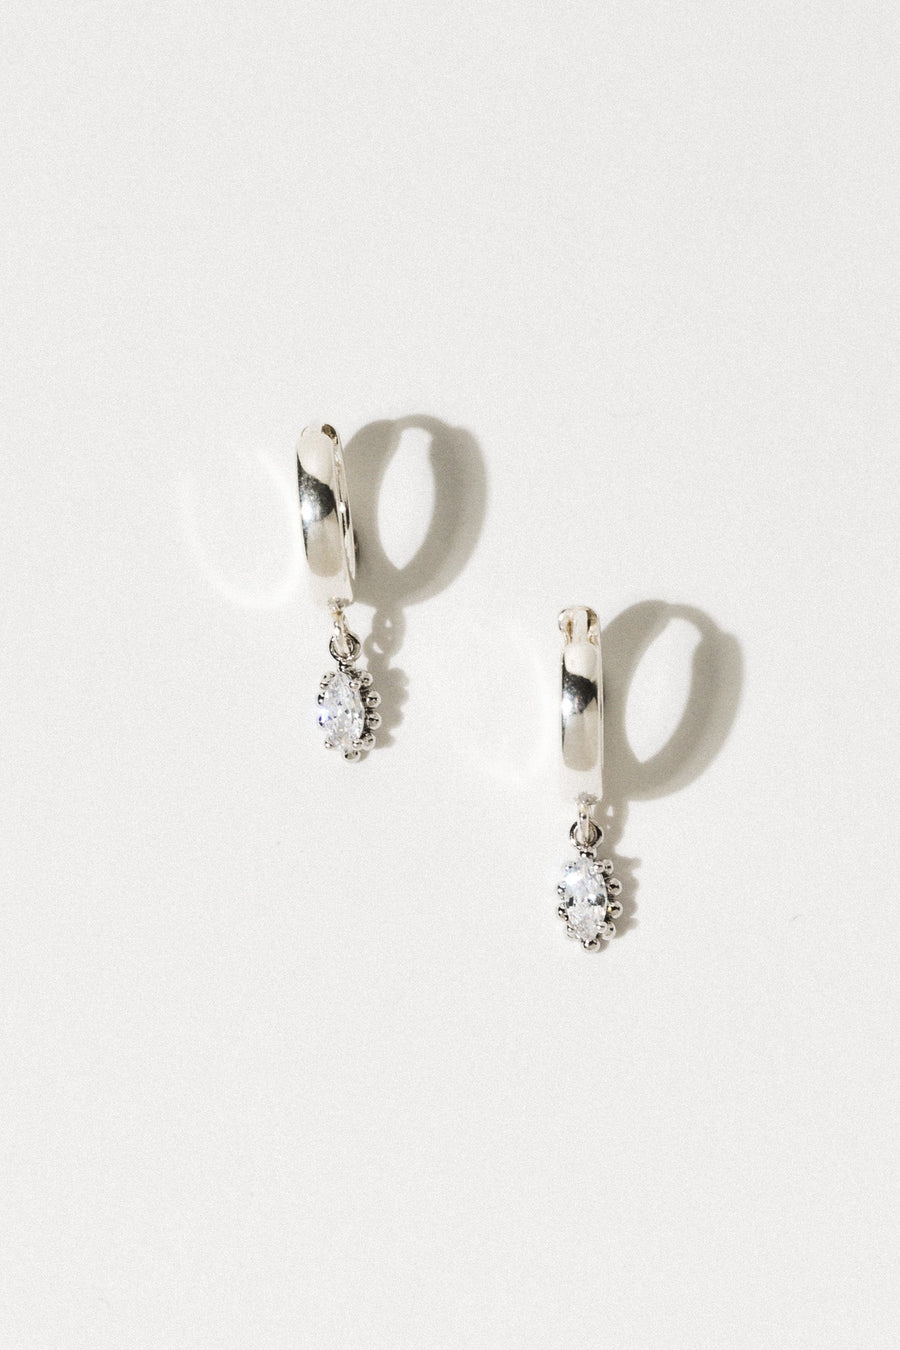 Rio Grande Jewelry Silver Sophia Drop Earrings